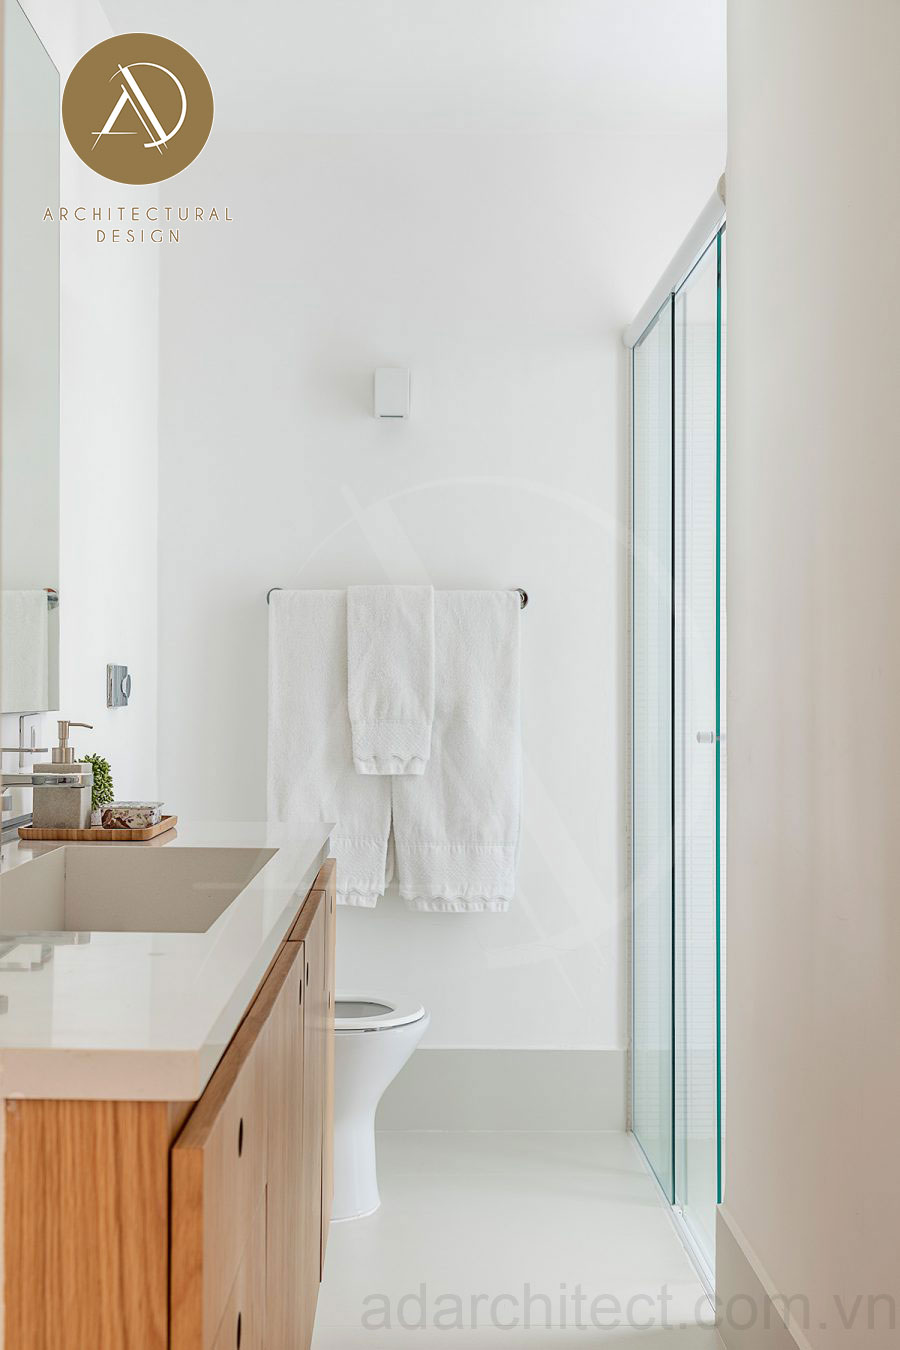 nhà 2 tầng 3 phòng ngủ: nhà vệ sinh đẹp đơn giản tiết kiệm nhiều chi phí